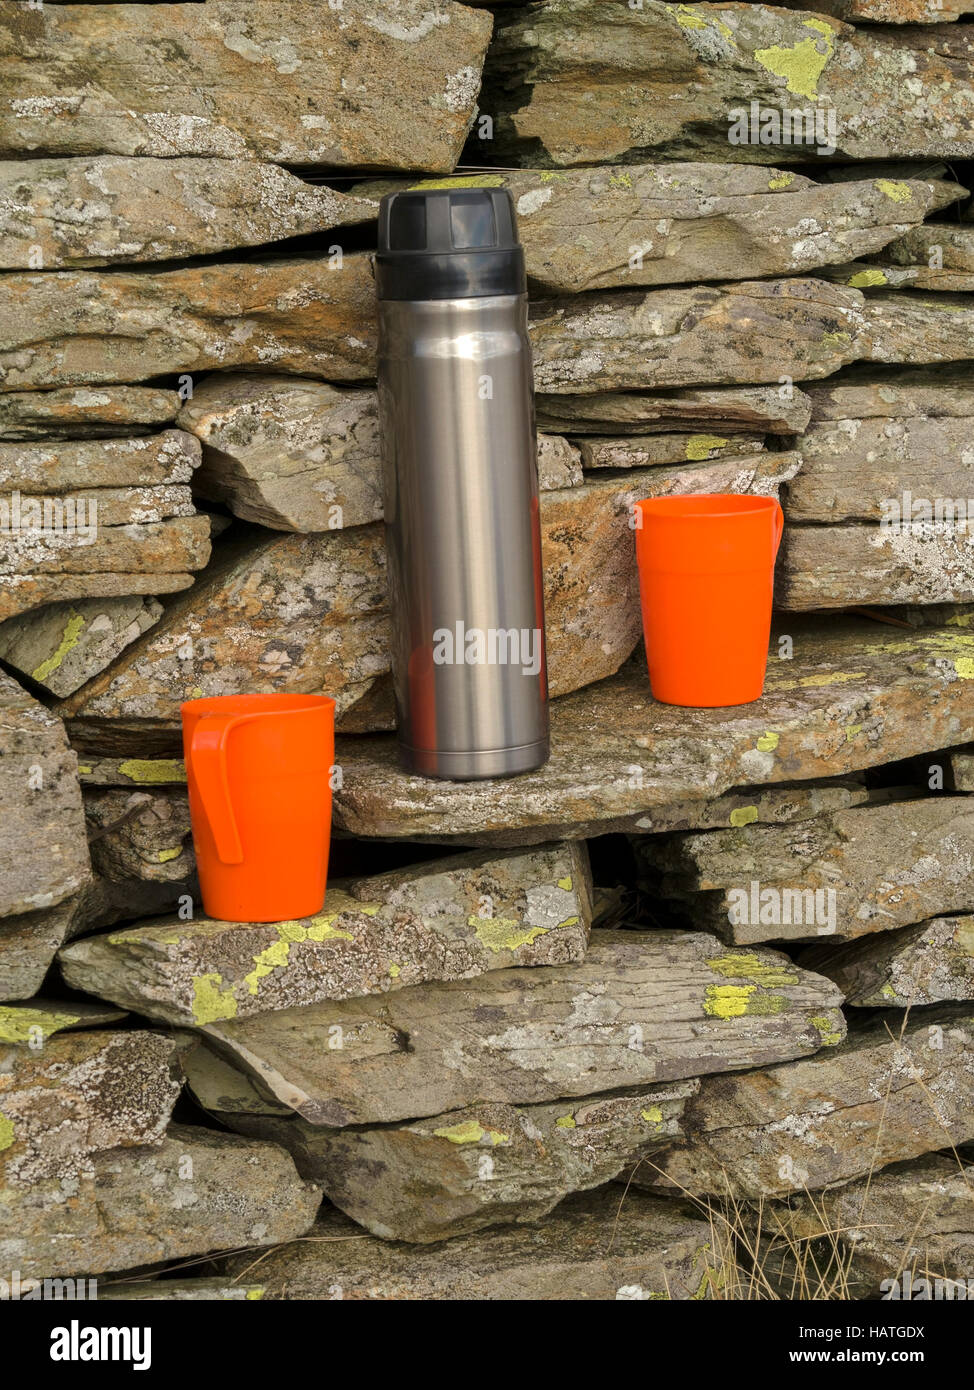 Matraccio thermos in acciaio inox e due tazze in plastica arancione su pareti in pietra a secco. Foto Stock